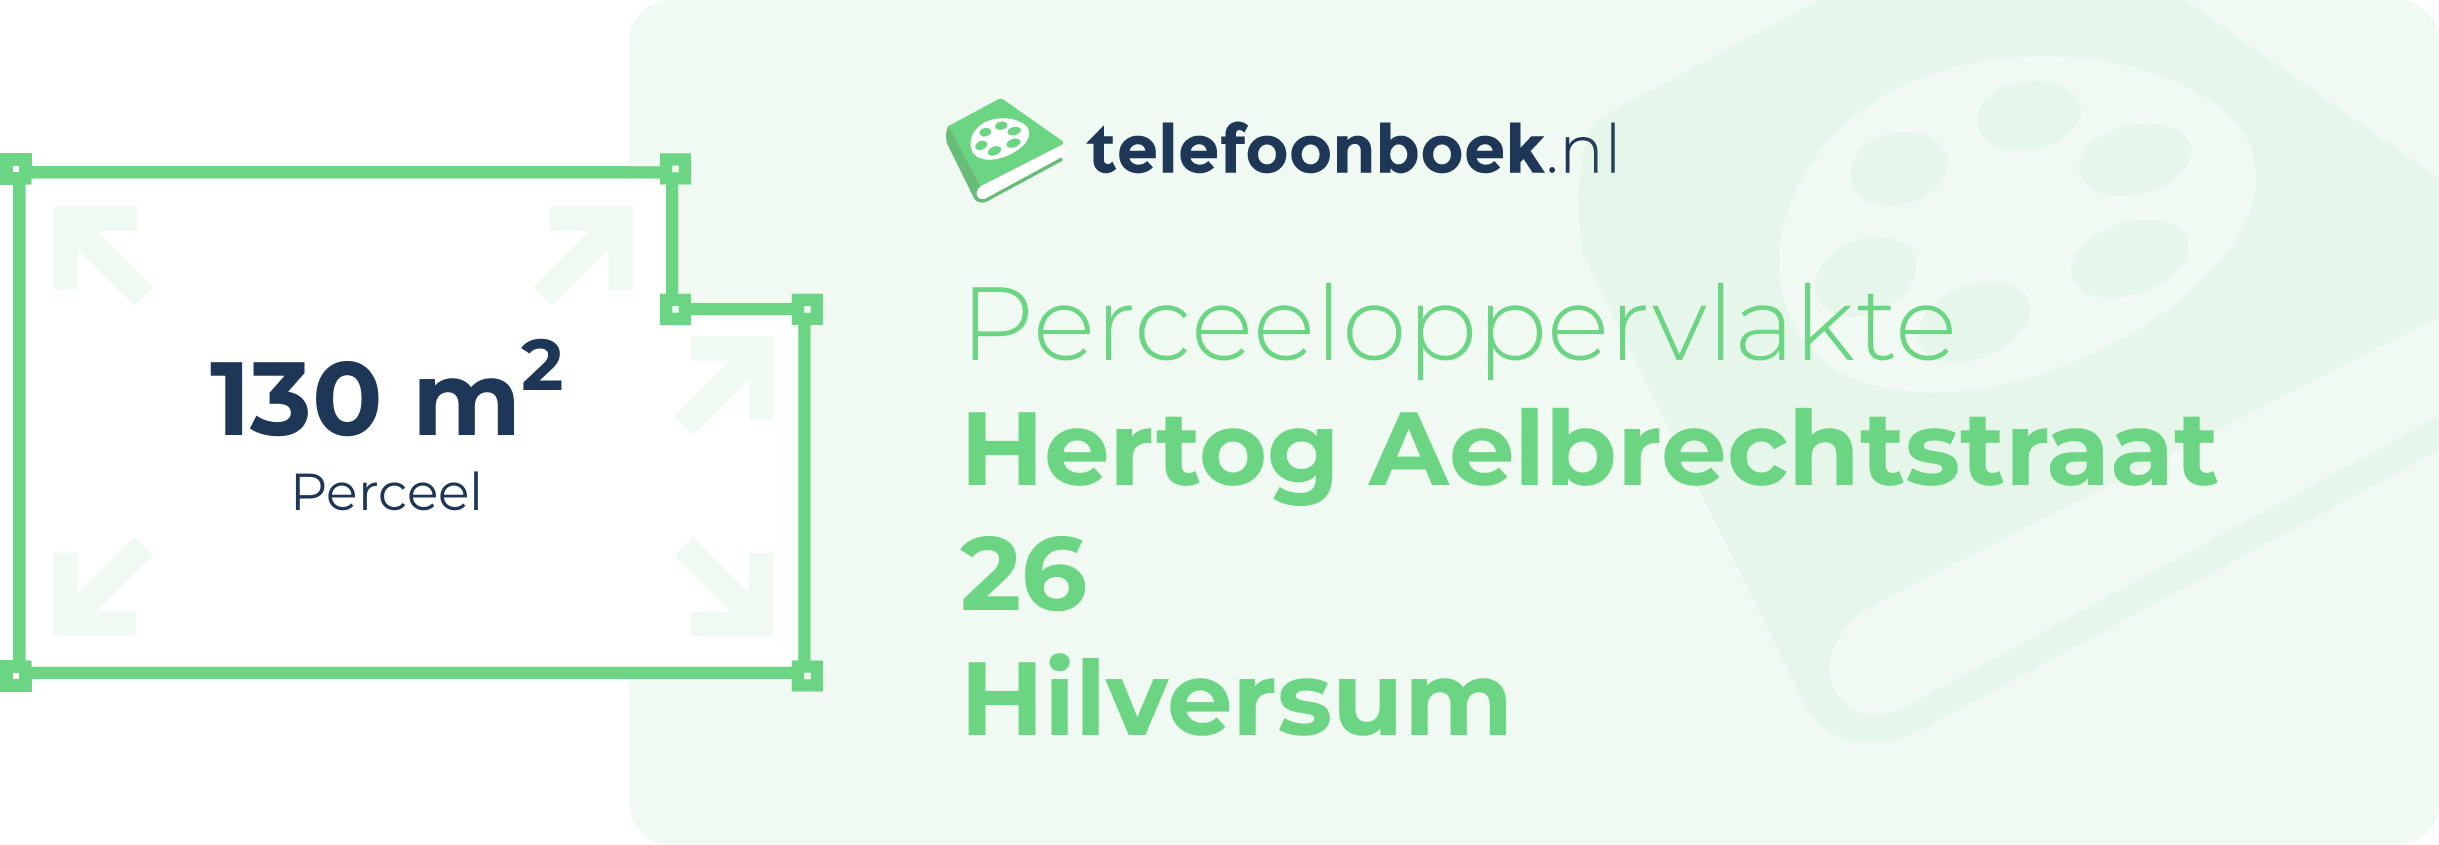 Perceeloppervlakte Hertog Aelbrechtstraat 26 Hilversum